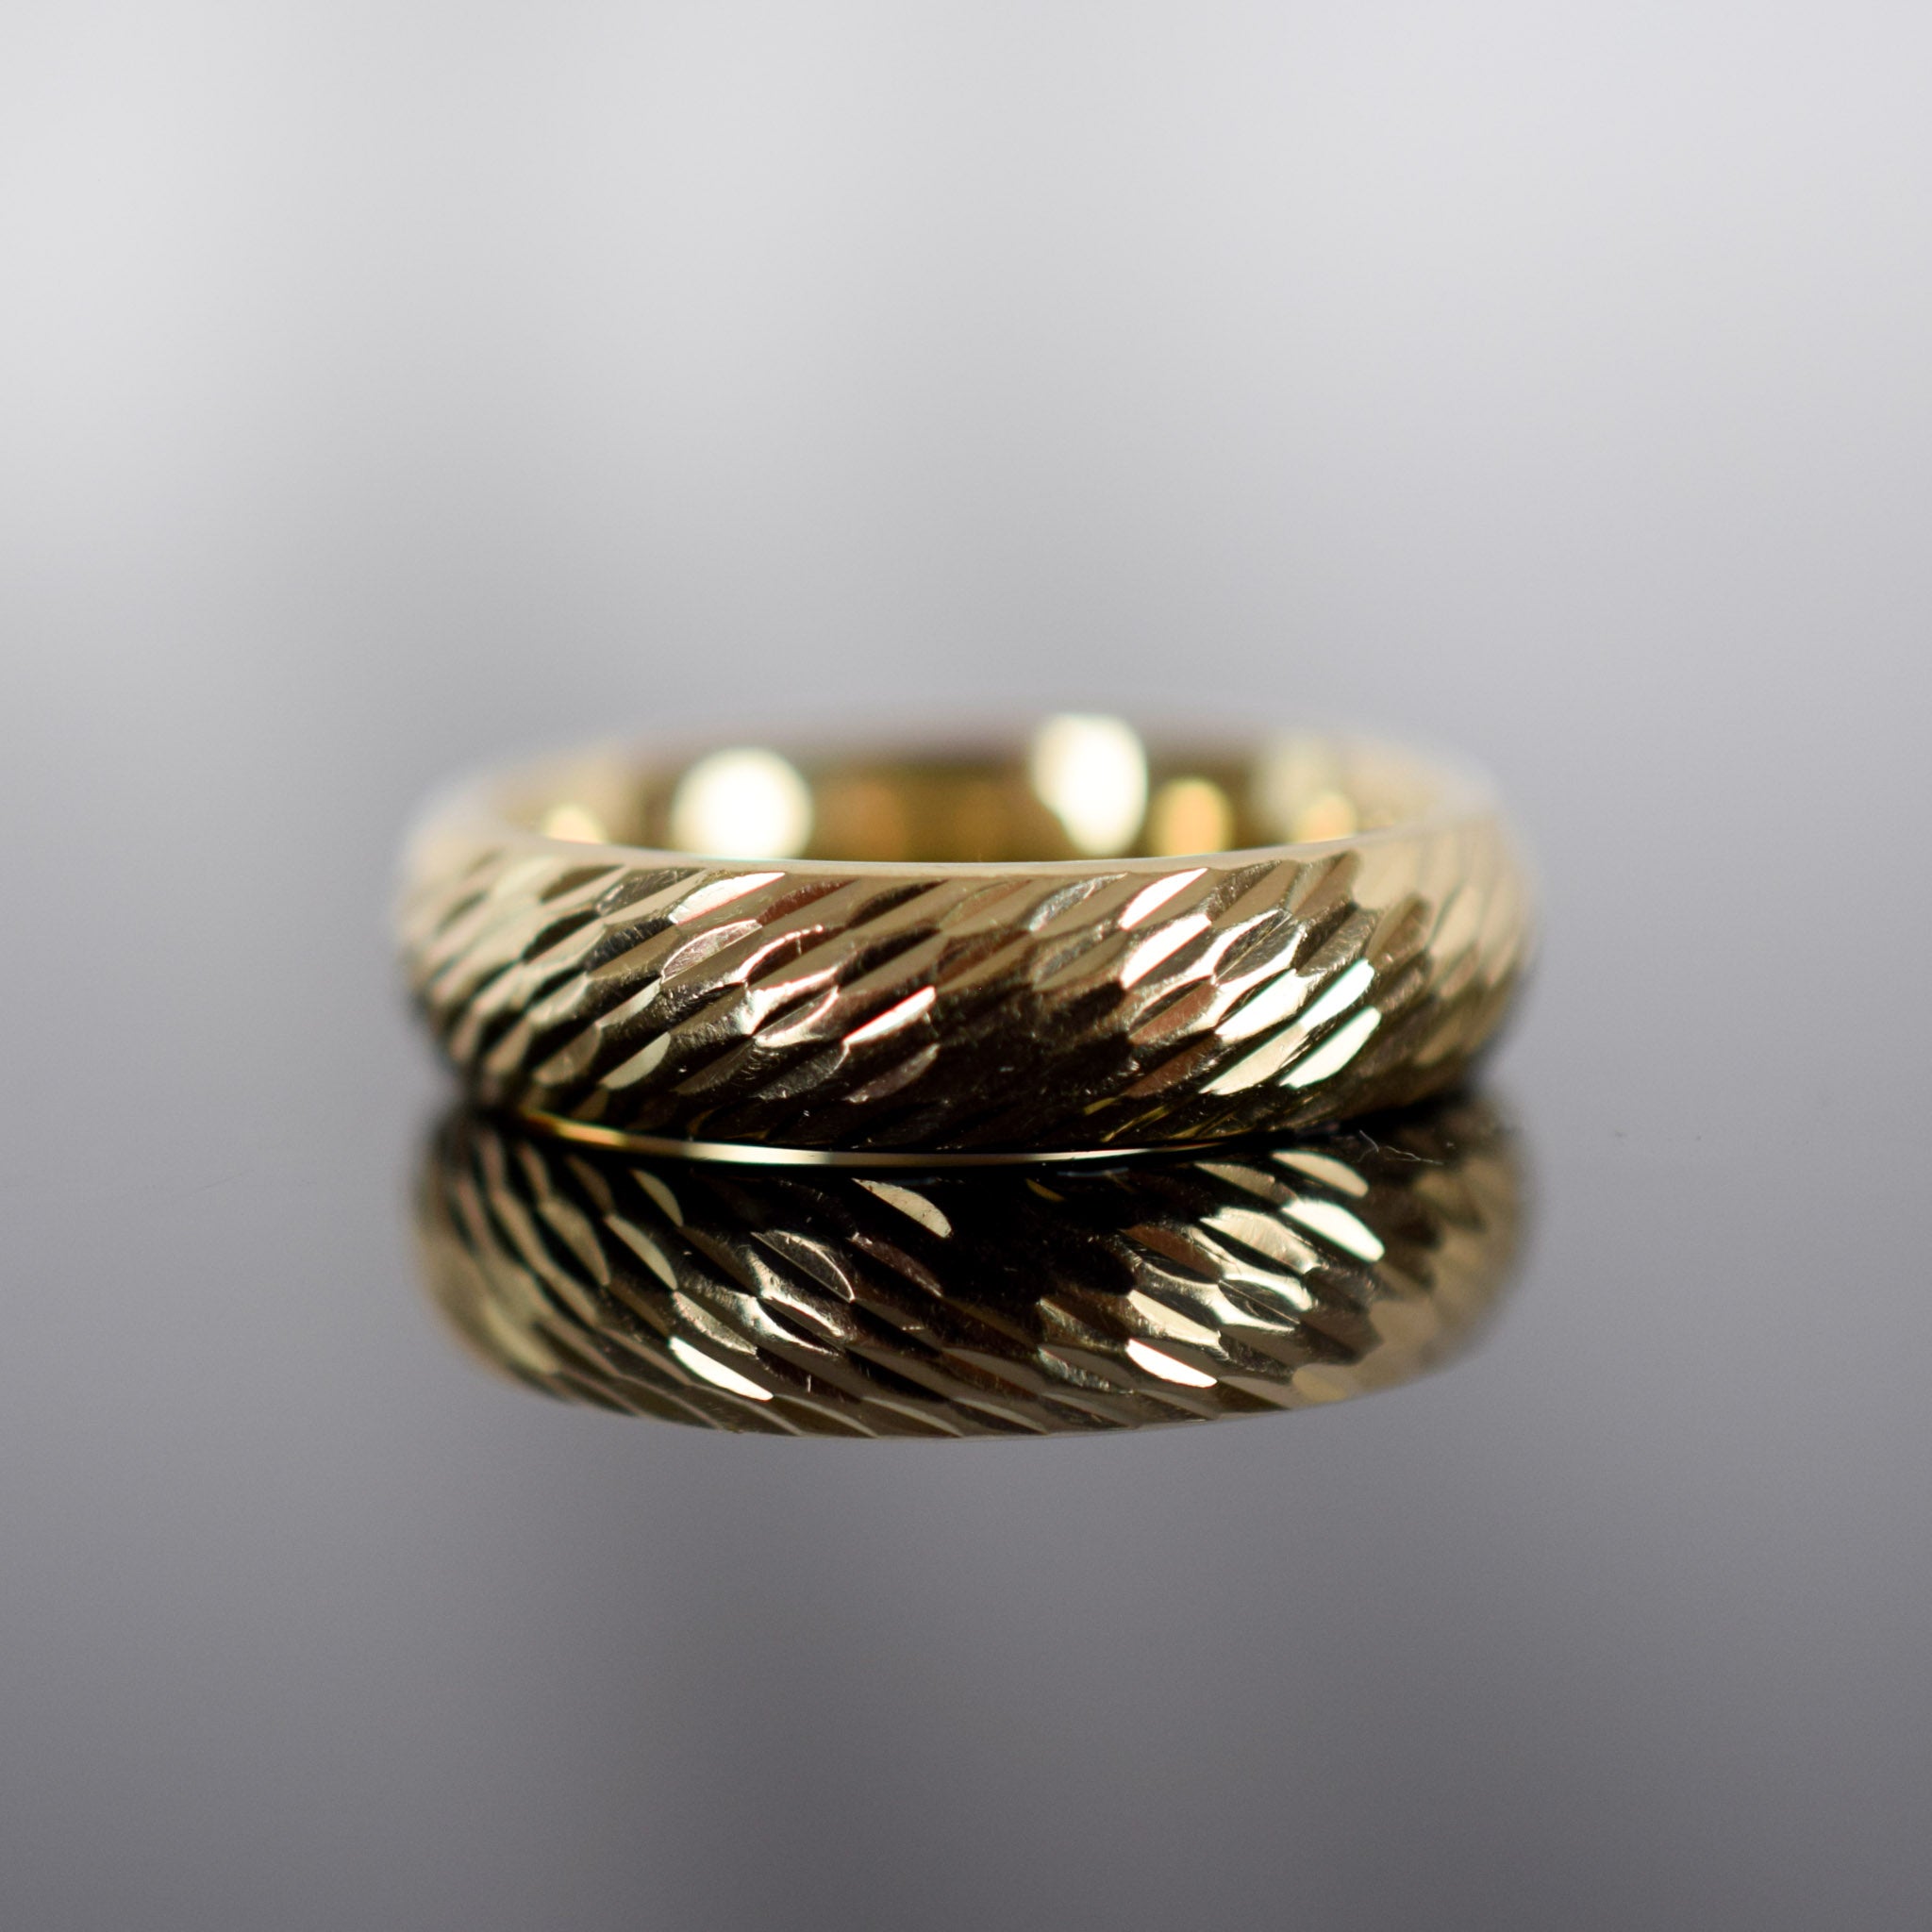 Vintage gold ring for sale, folklor 